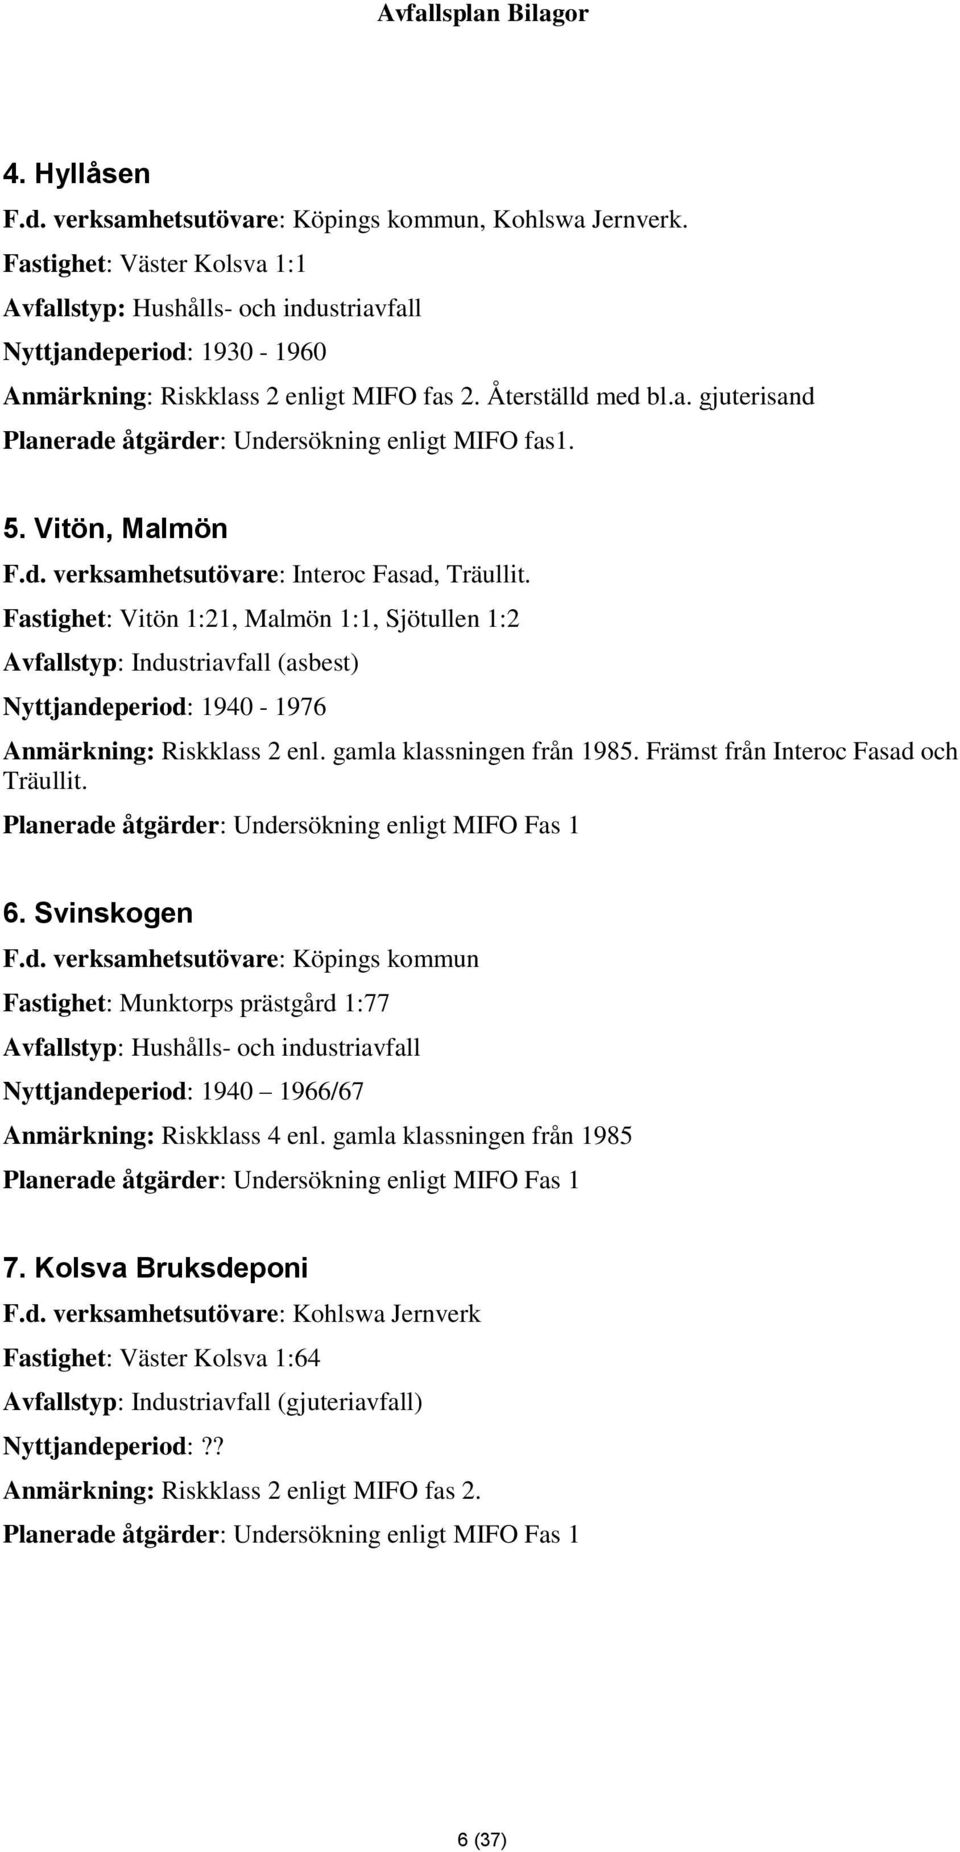 5. Vitön, Malmön F.d. verksamhetsutövare: Interoc Fasad, Träullit.